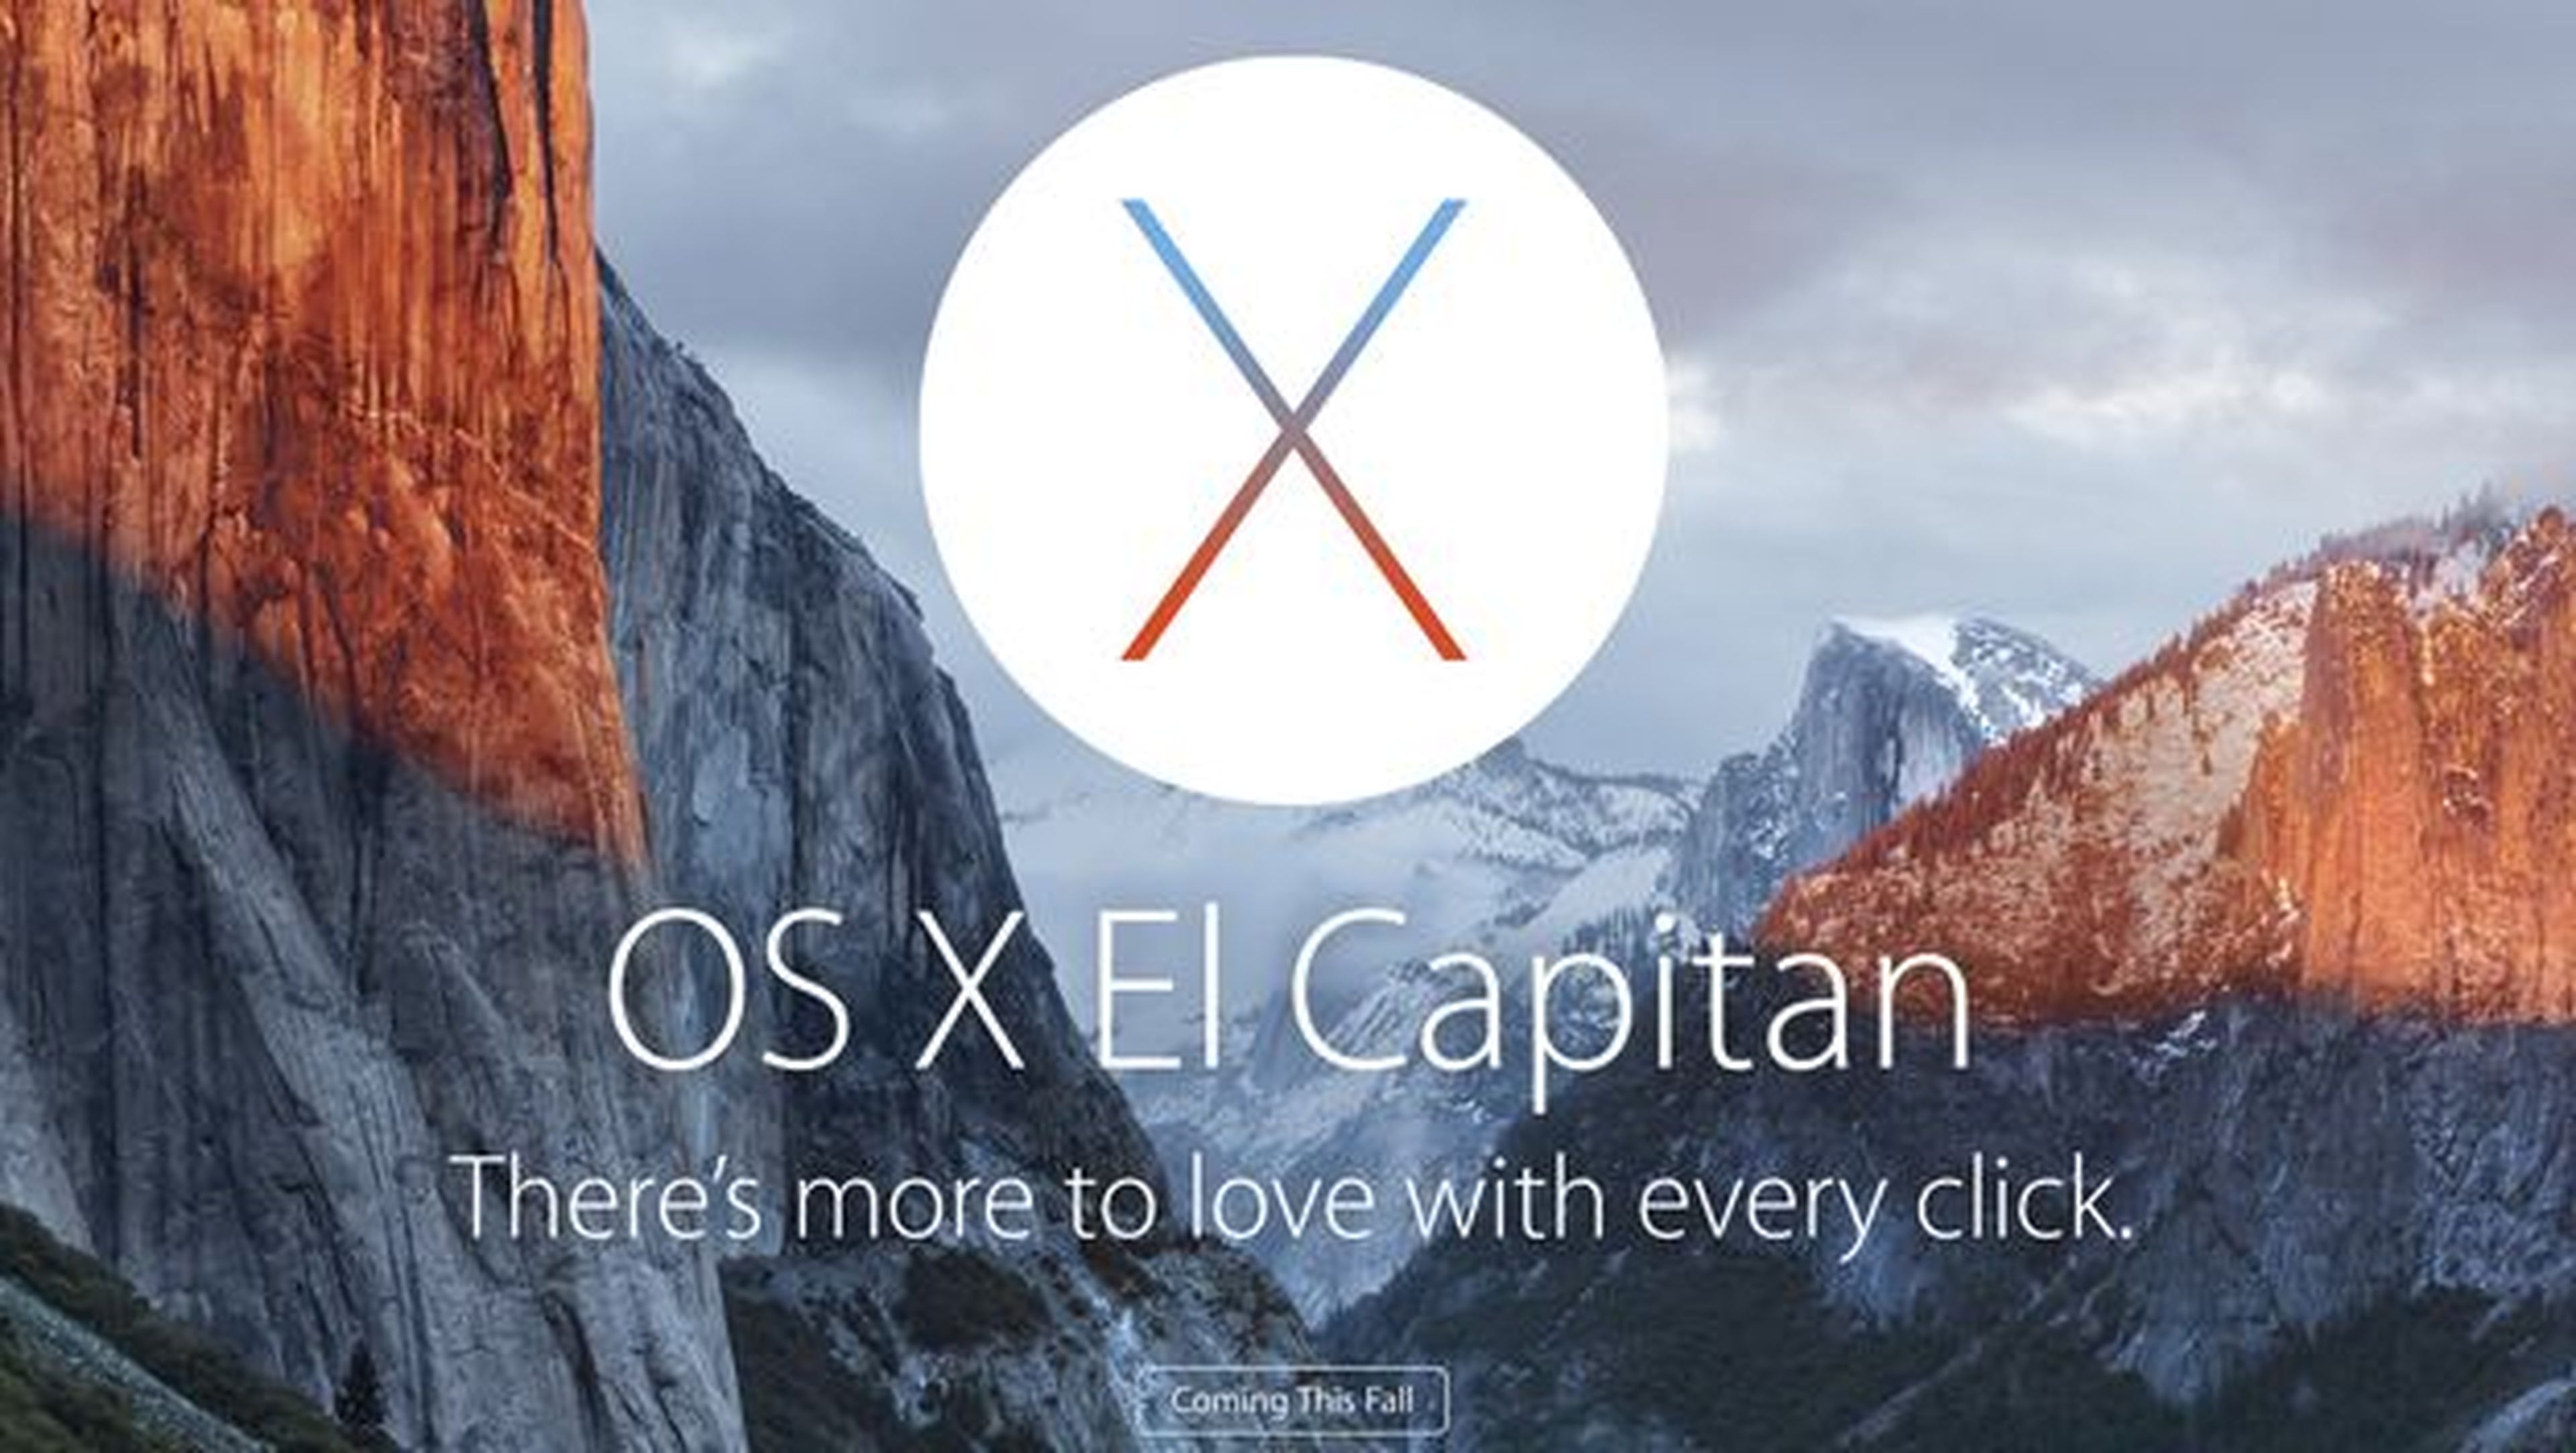 OS X El Capitan, disponible gratis a partir de mañana